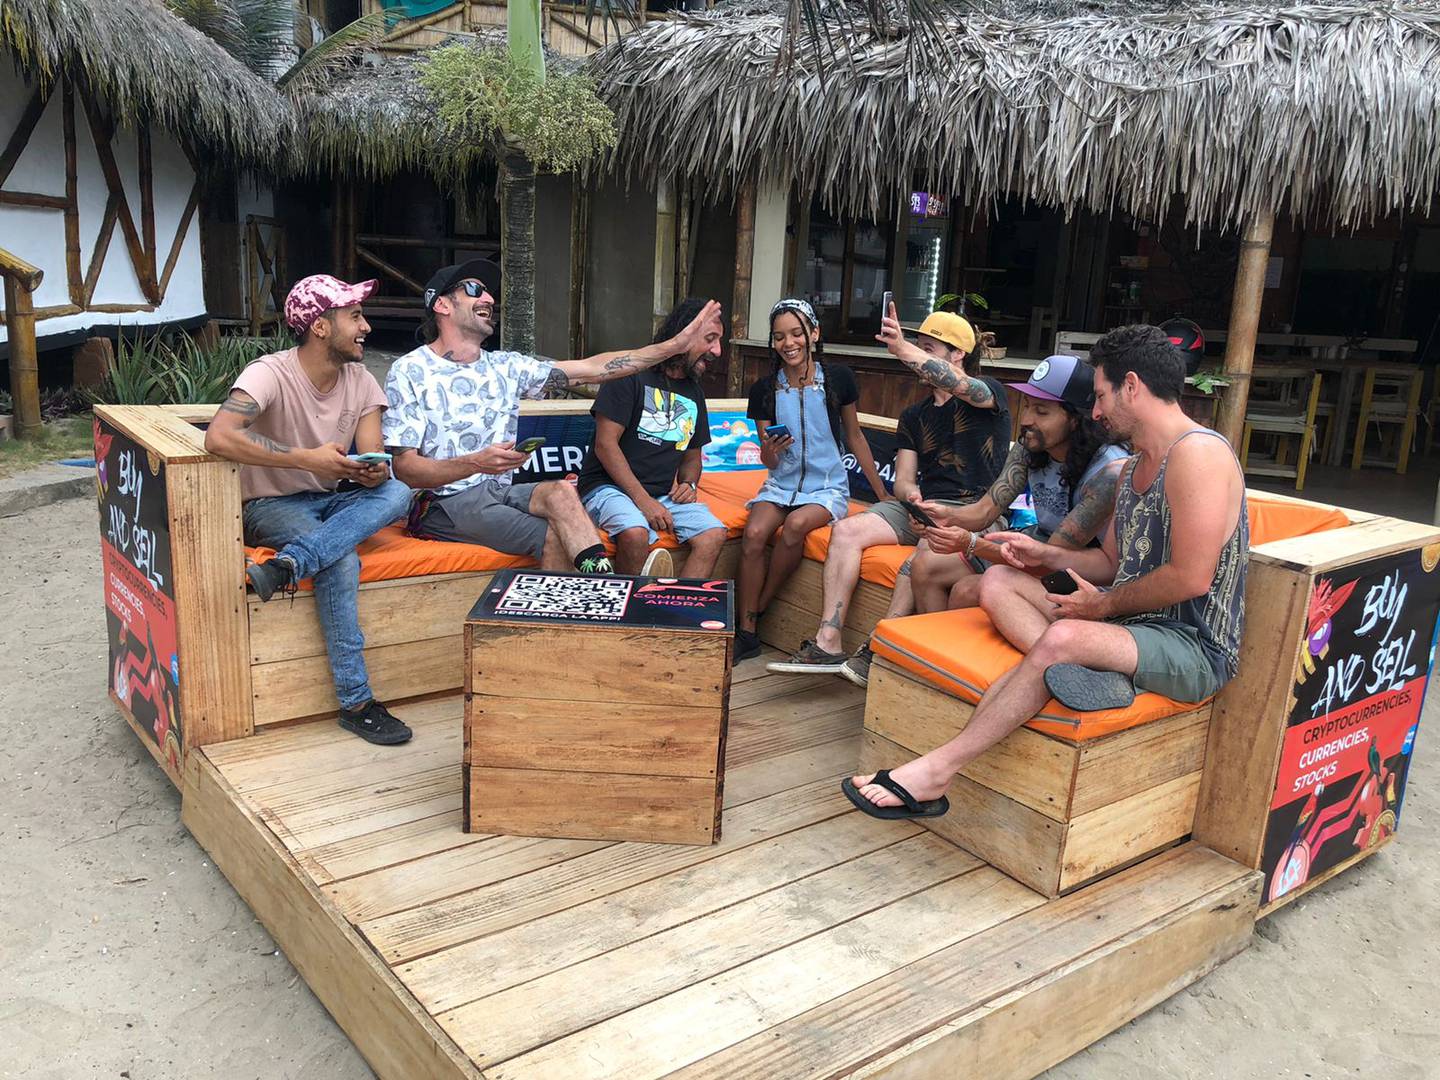 Libertex abrió el primer spot de trading playero en Montañita, una de las playas más concurridas del Ecuador.